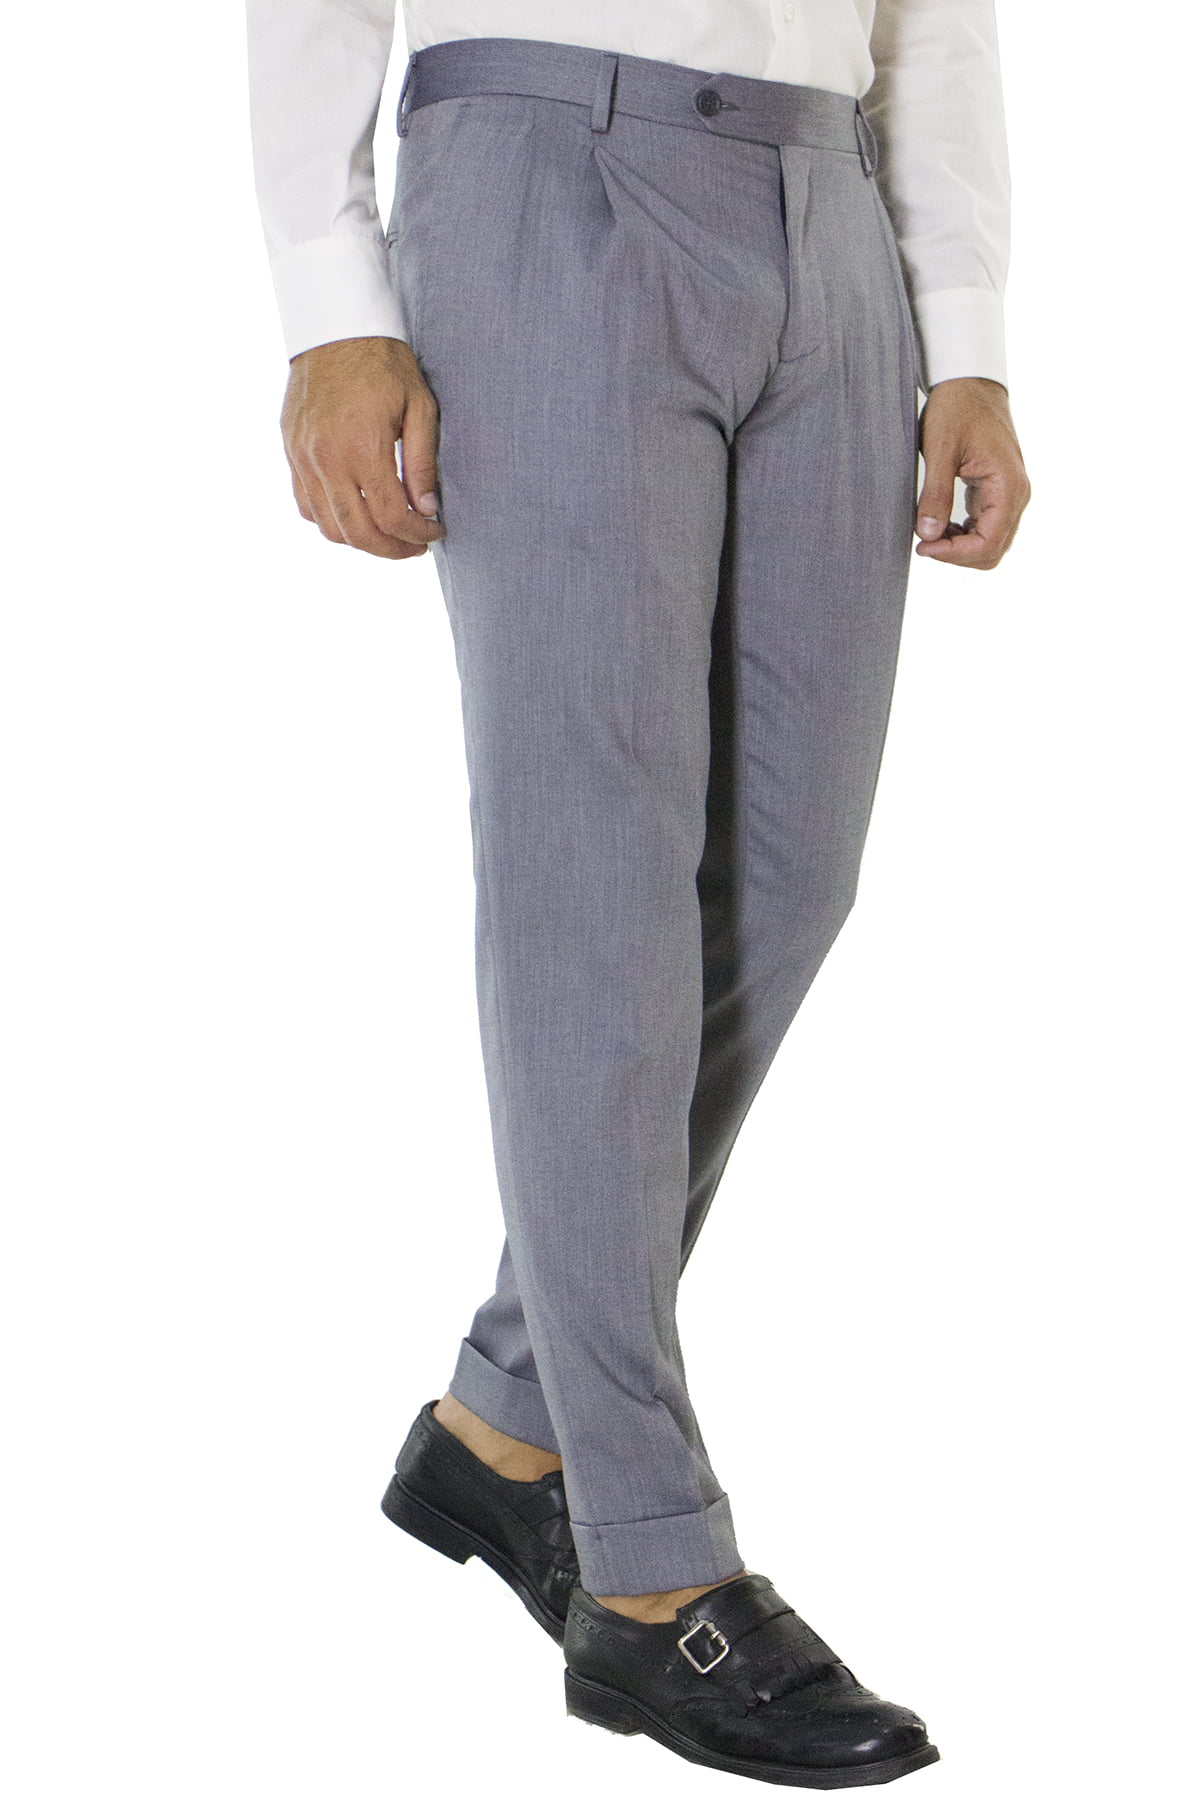 Pantalone uomo grigio chiaro in lana con doppia pinces e risvolto 4cm